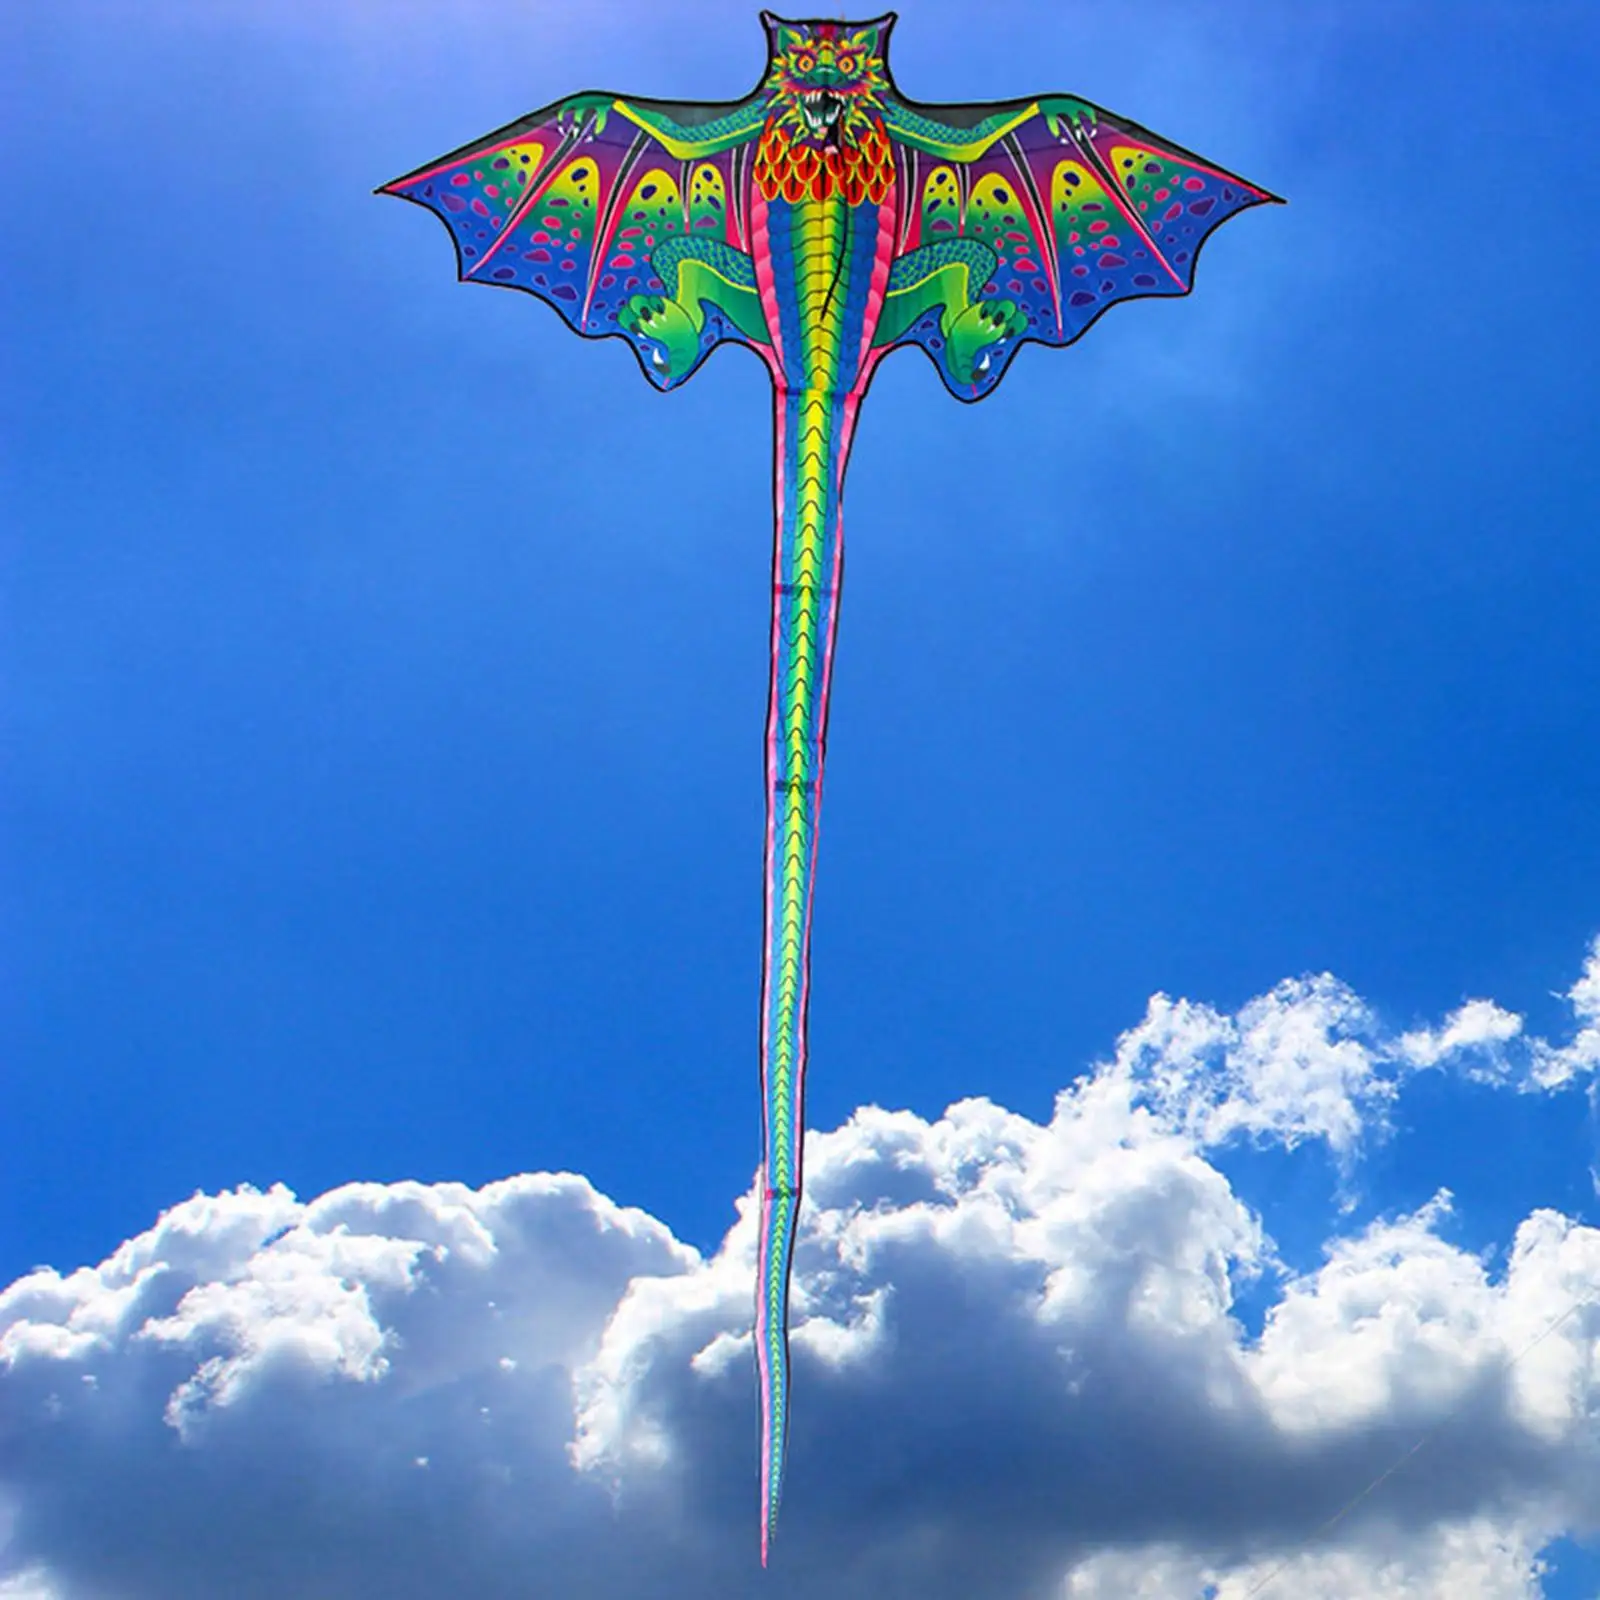 3D Dragon Kite Fun Animal Easy to Fly Giant Single Line Kites for Park Beach